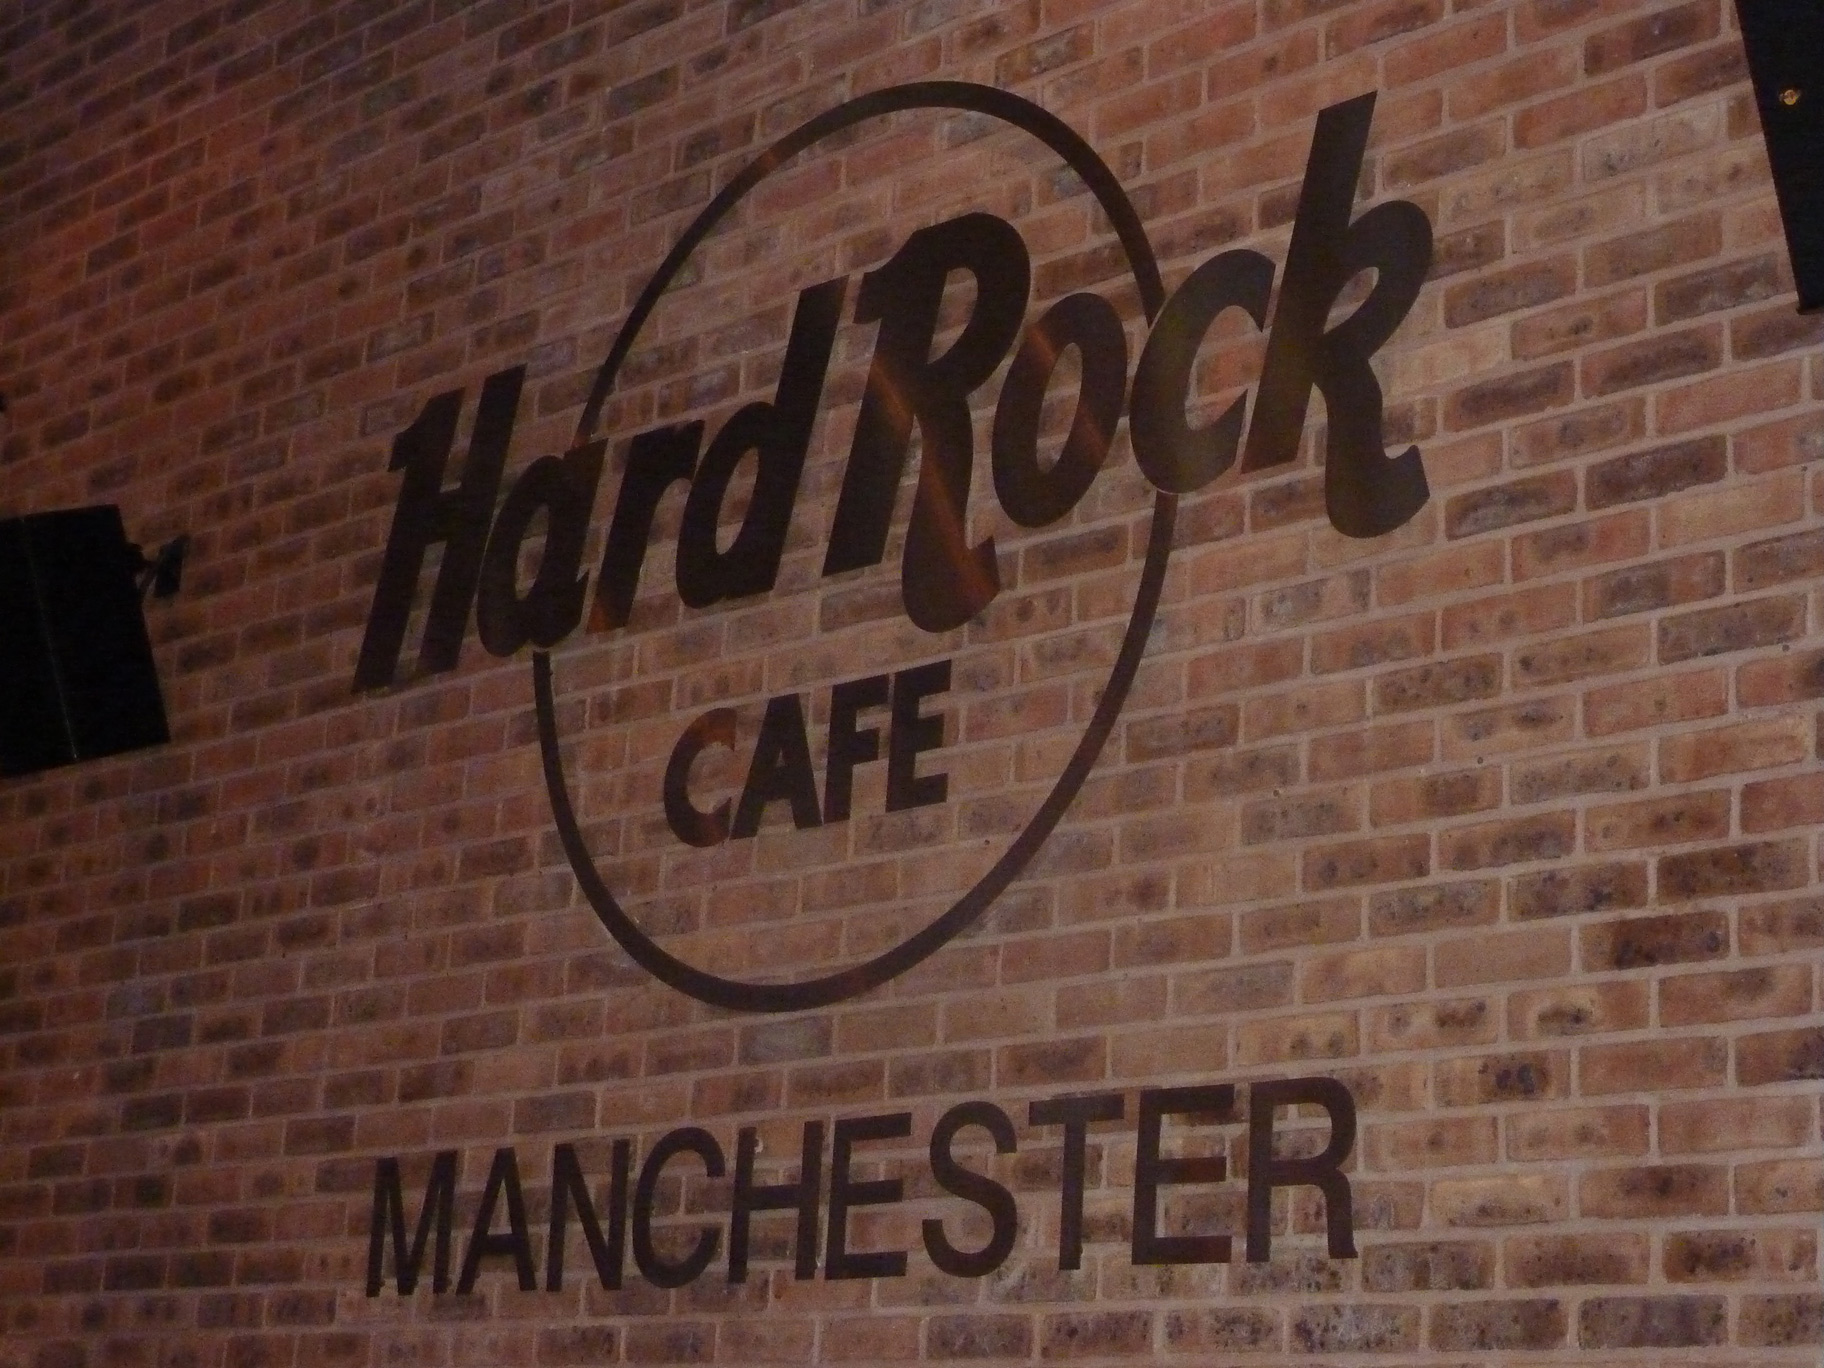 Inside Hard Rock Cafe, Manchester